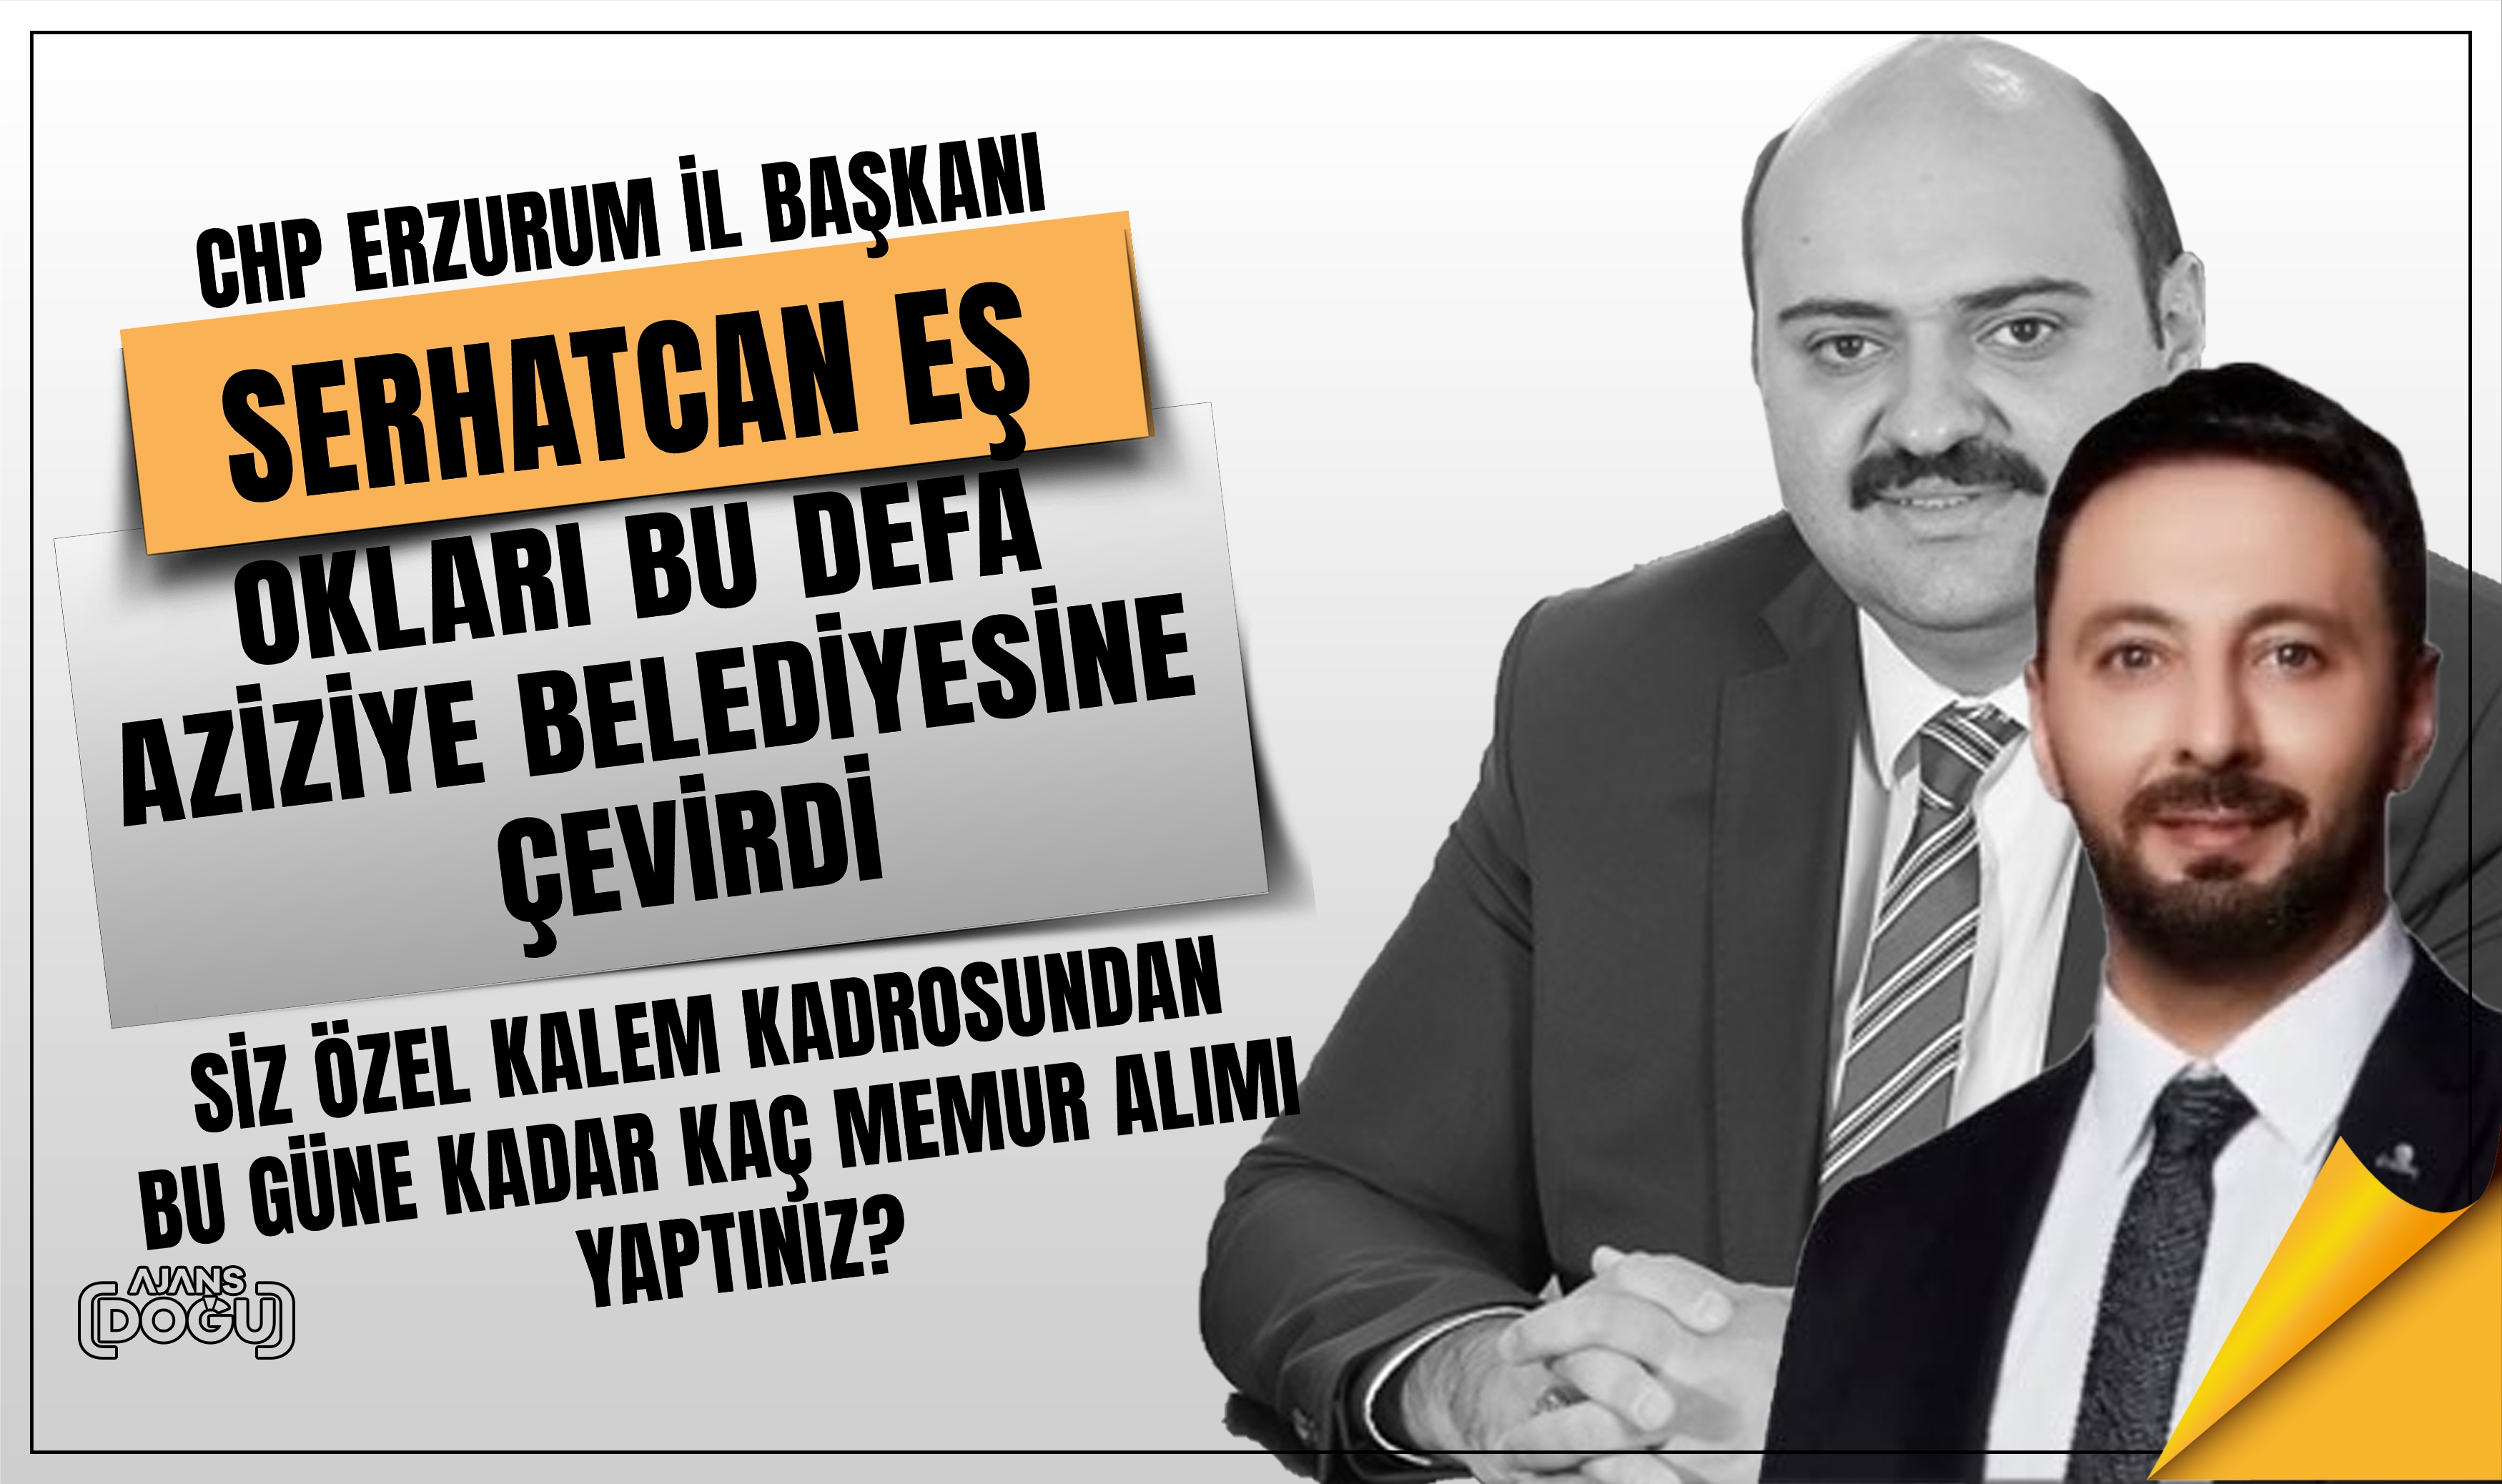 CHP Erzurum İl Başkanı Serhatcan Eş'den Aziziye Belediyesine yakın markaj